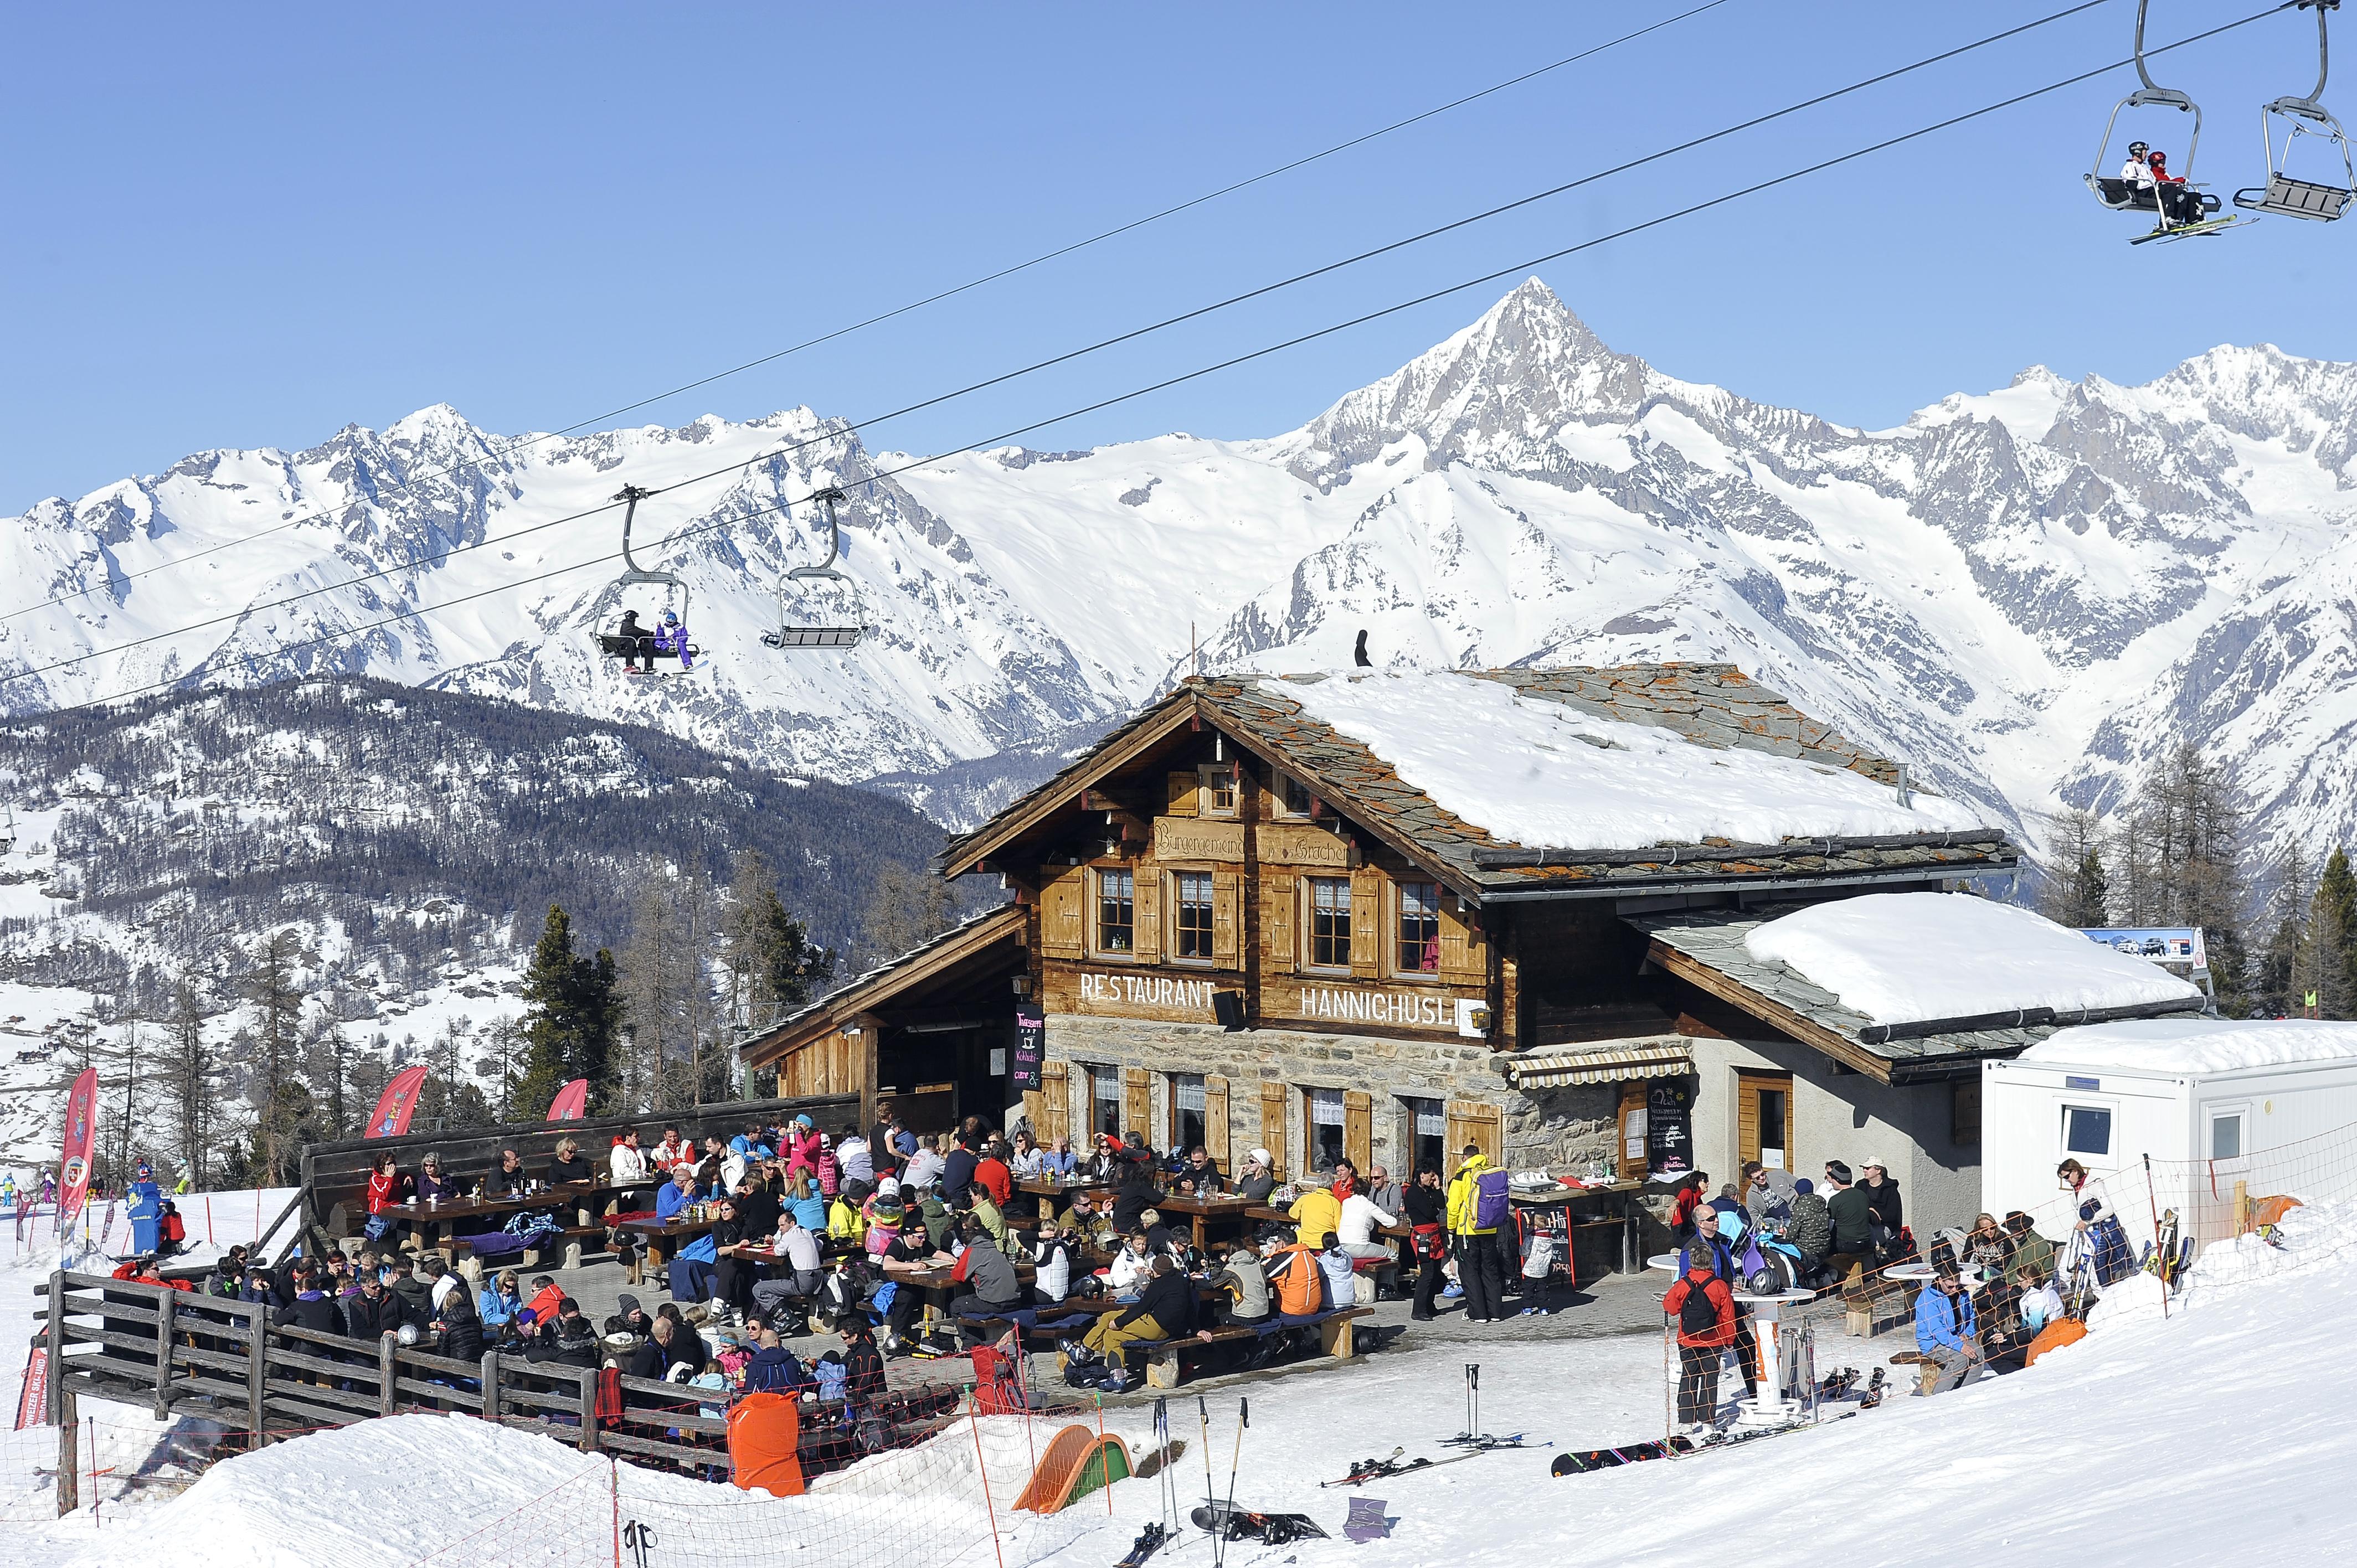 Wintersportler erholen sich im Bergrestaurant Hannighuesli auf der Hannigalp.